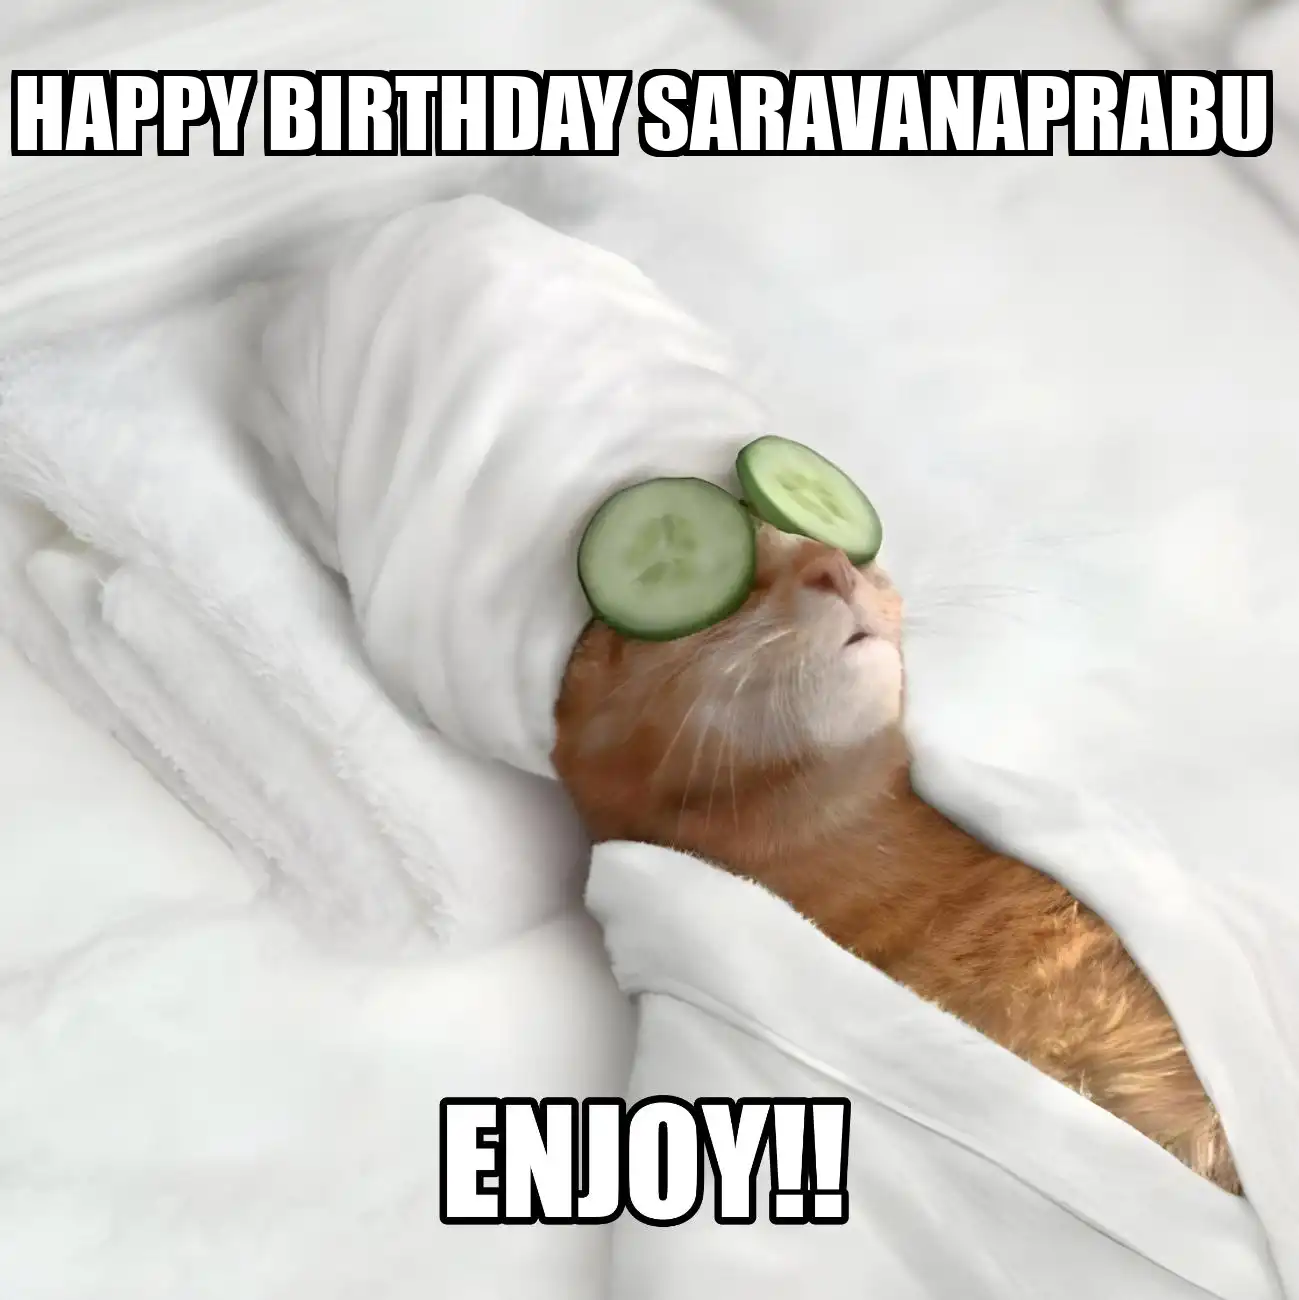 Happy Birthday Saravanaprabu Enjoy Cat Meme